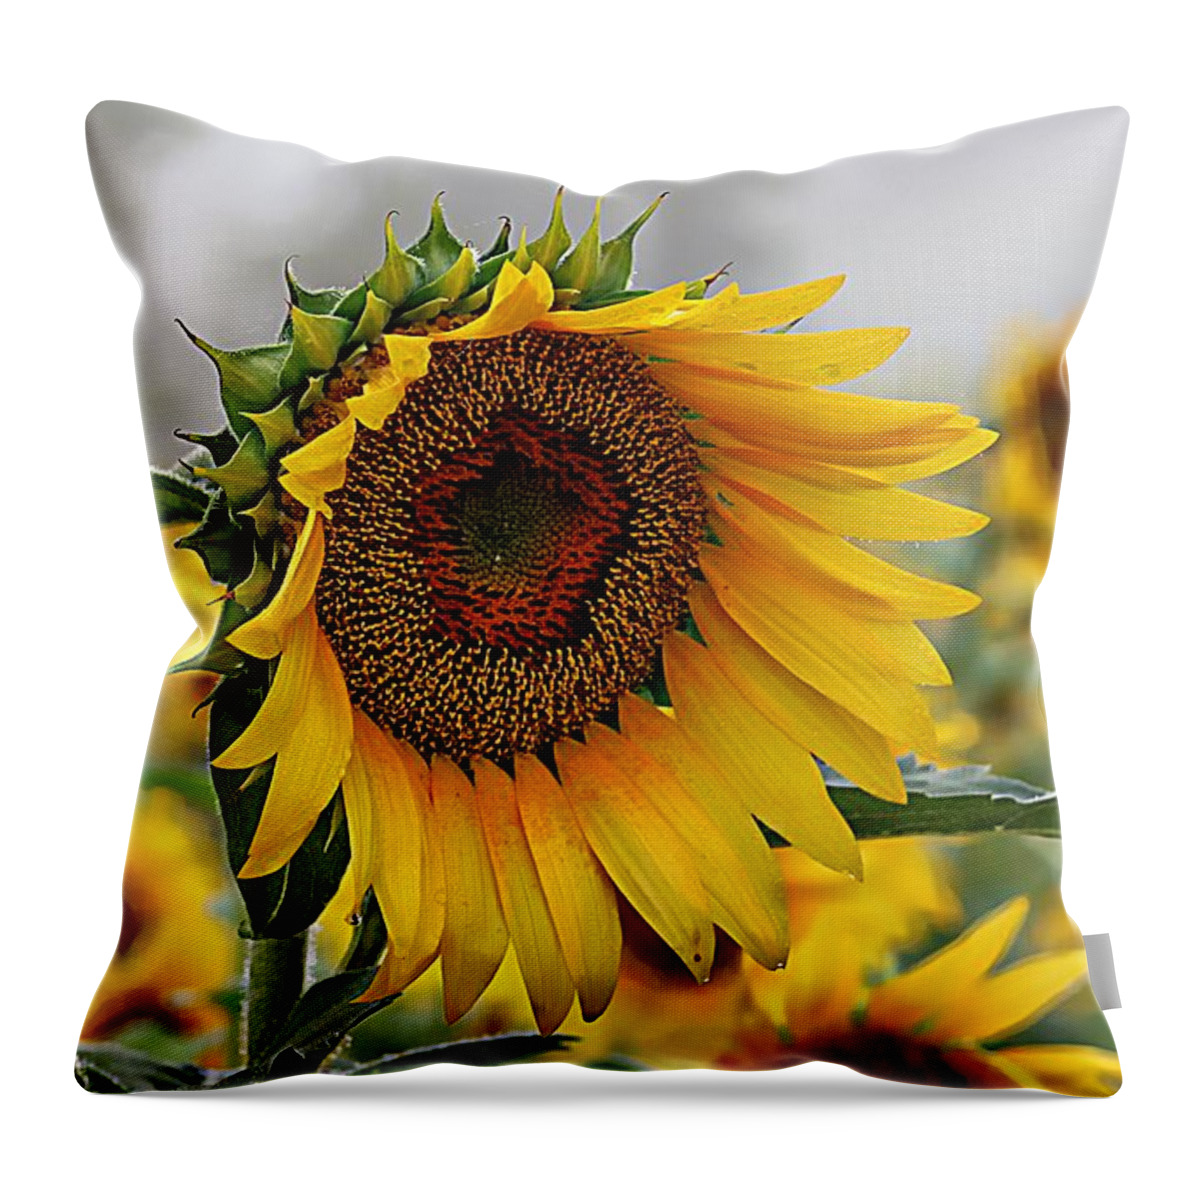 Sunflower Throw Pillow featuring the photograph Misty Morning Sunflower by Karen McKenzie McAdoo